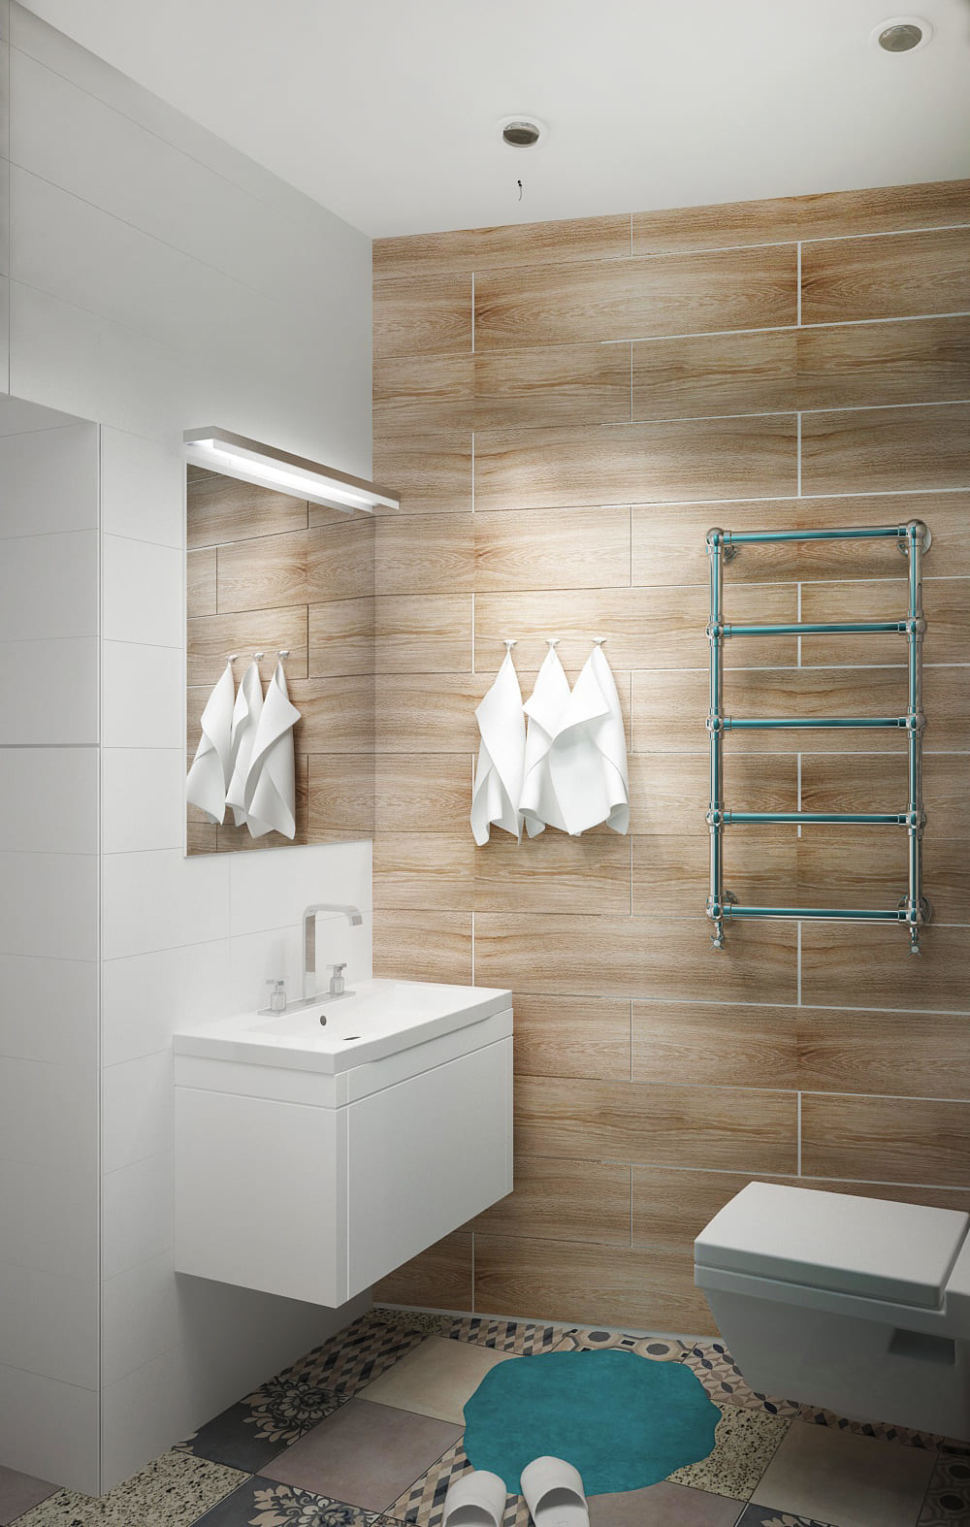 Дизайн ванной комнаты 4 кв.м, в природных тонах, зеркало, сушилка, мойка с подвесной тумбой